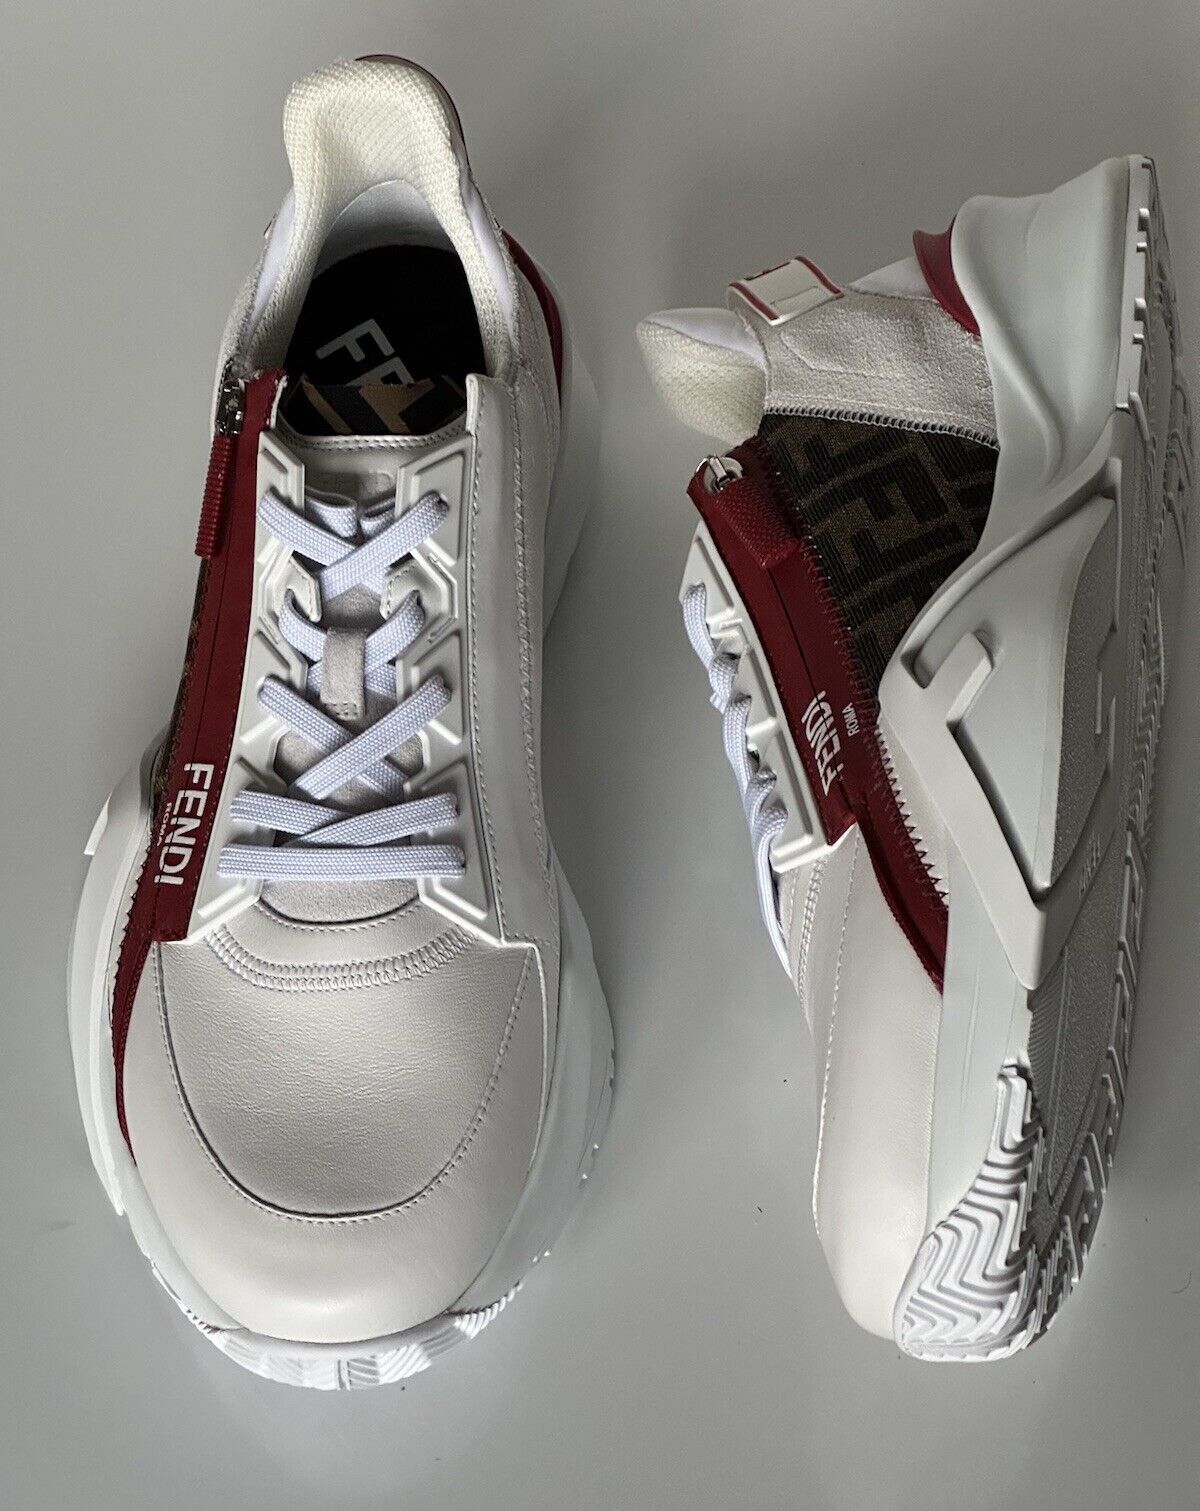 NIB $995 Fendi Flow Men's Leather Sneakers White 8 US (7 Euro) 7E1392 Italy